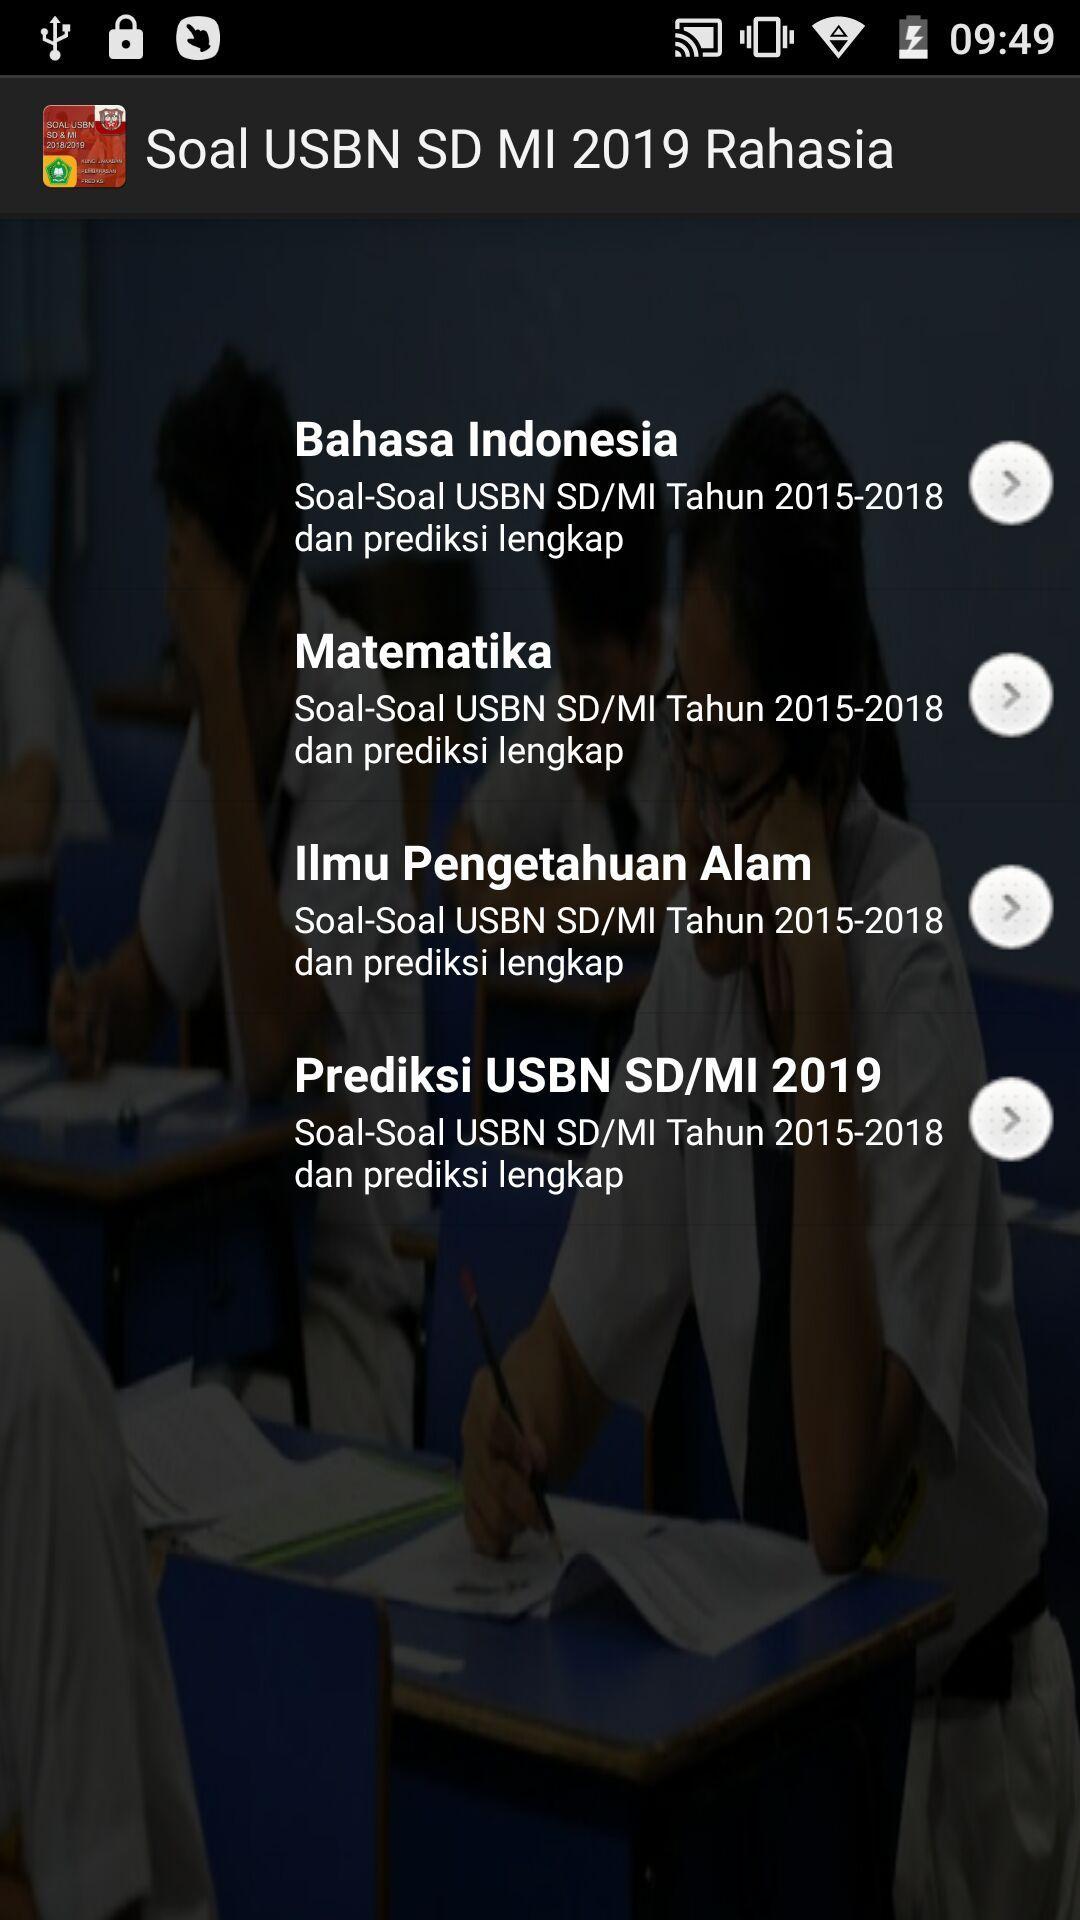 Download Simulasi Soal Unbk Offline Sd Mi 2019 Jawaban